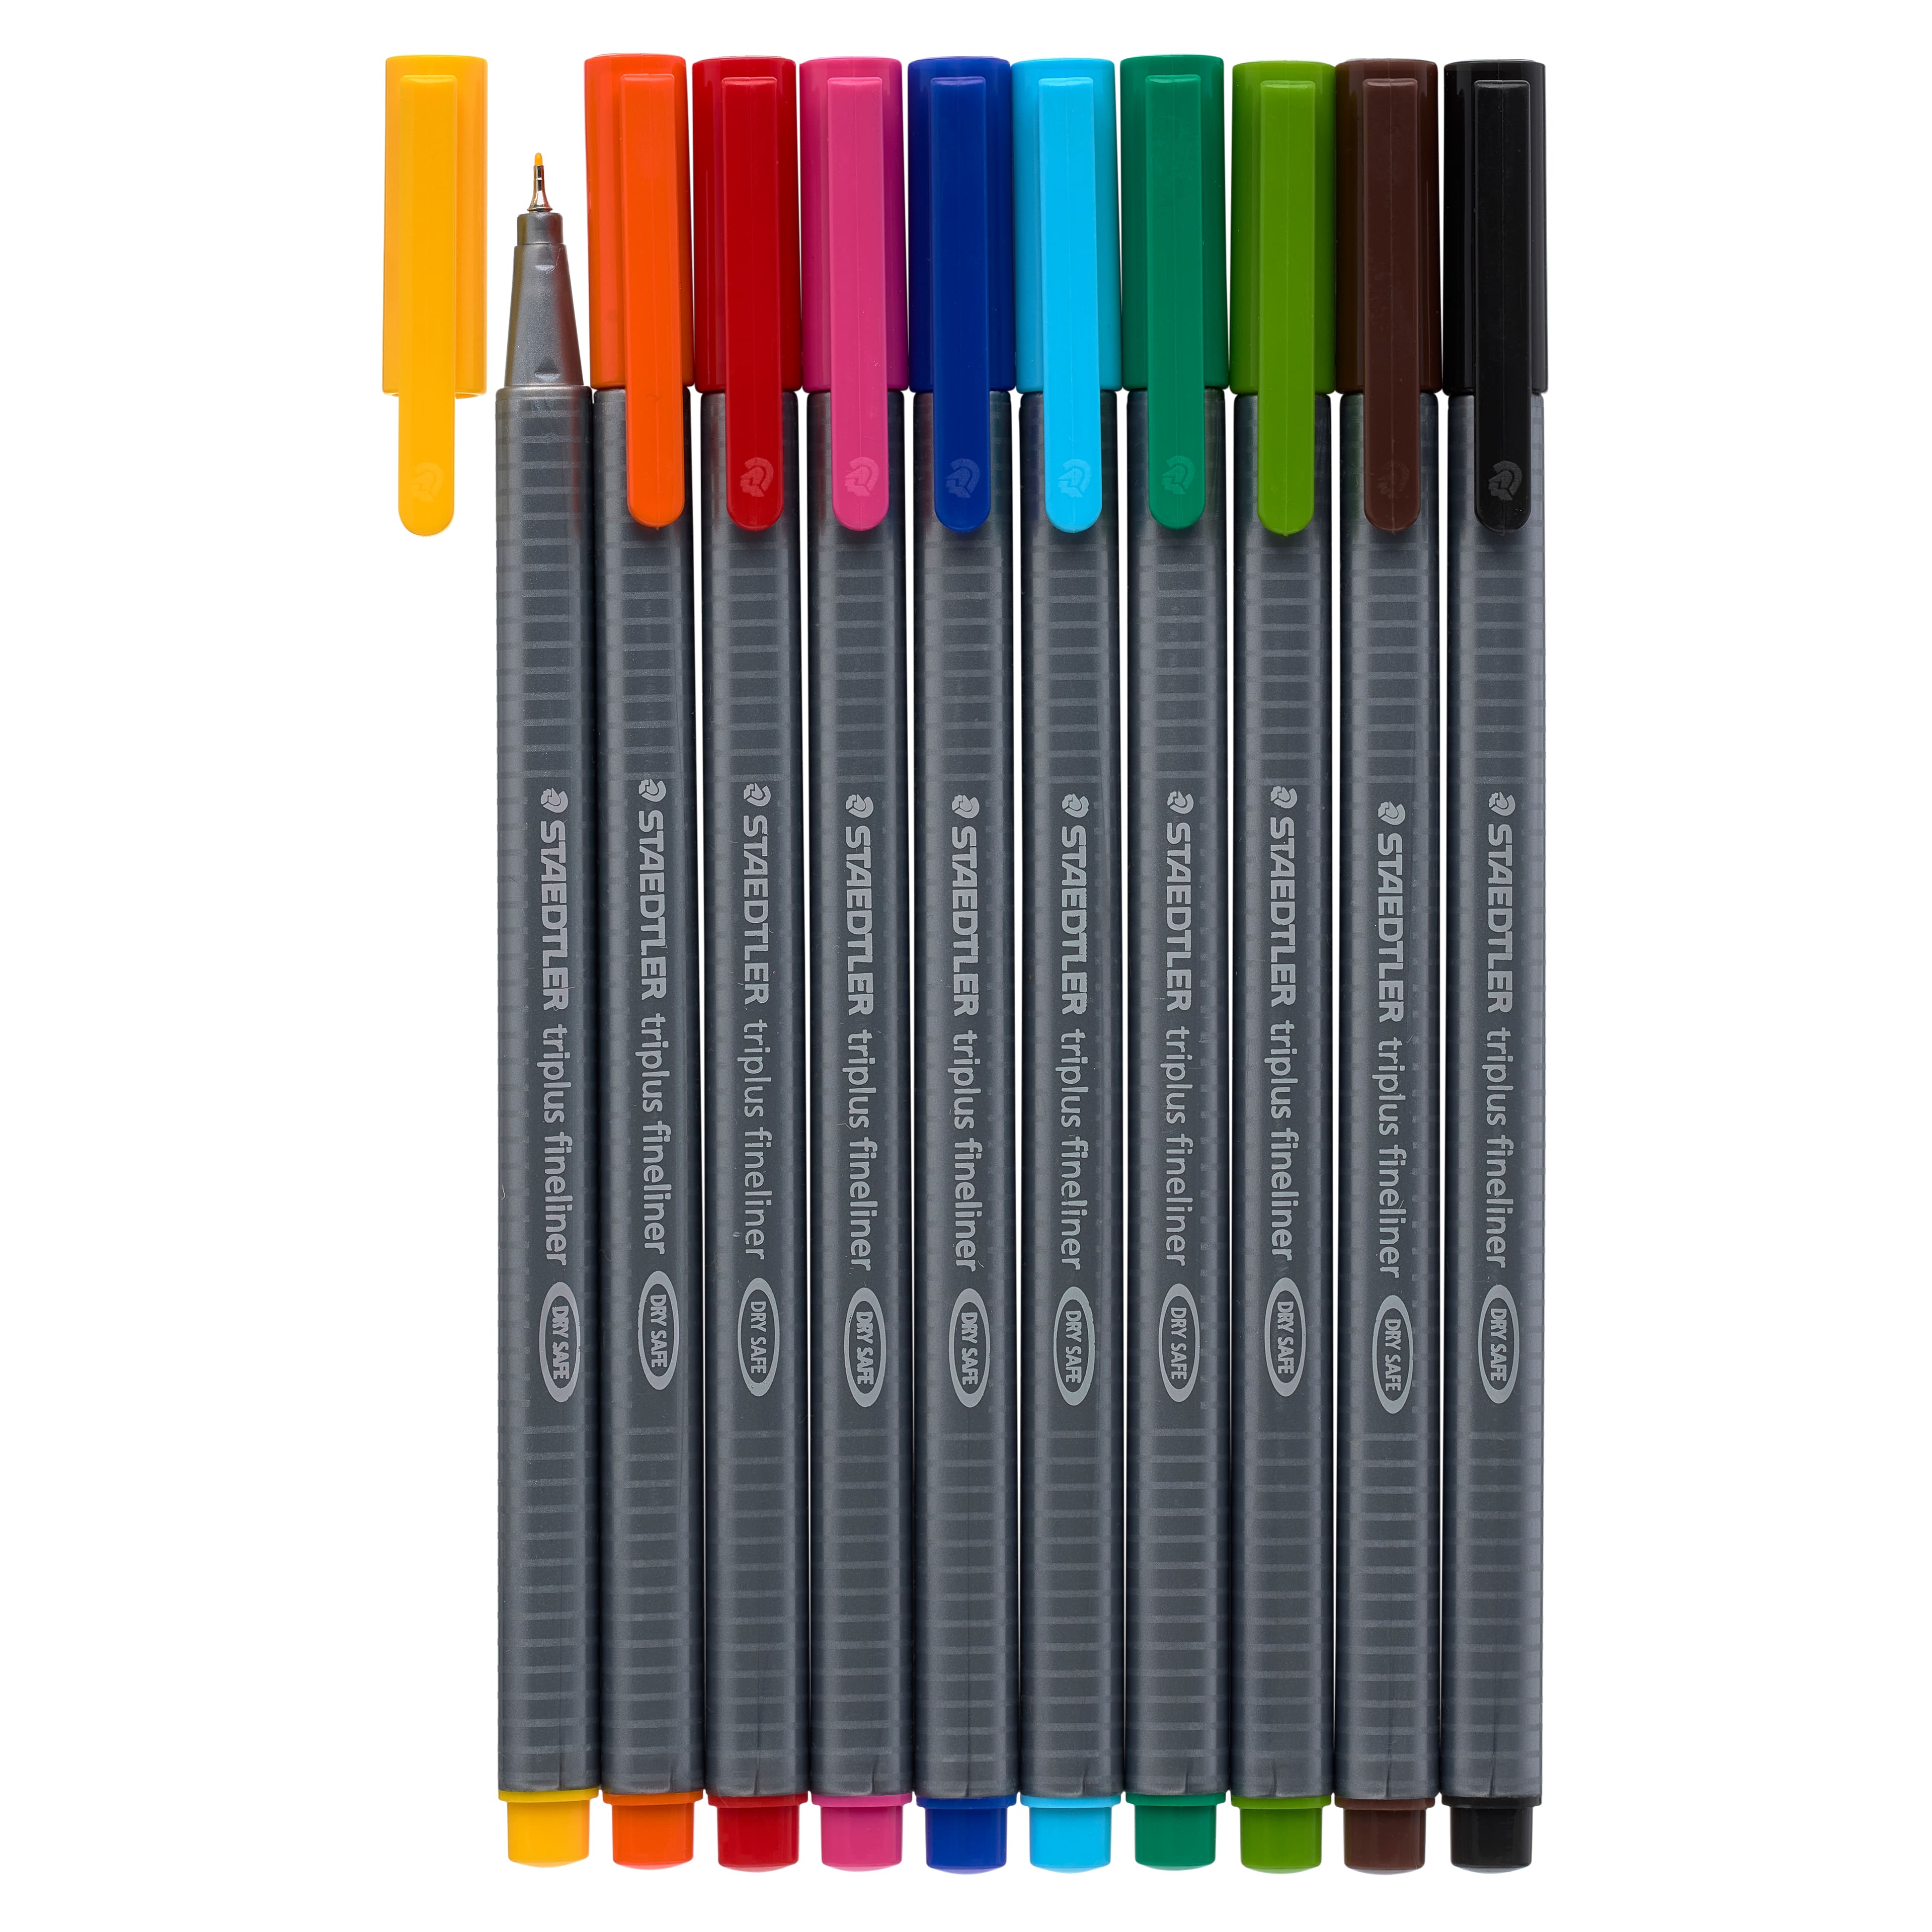 STAEDTLER Triplus Fineliner Pen Sets